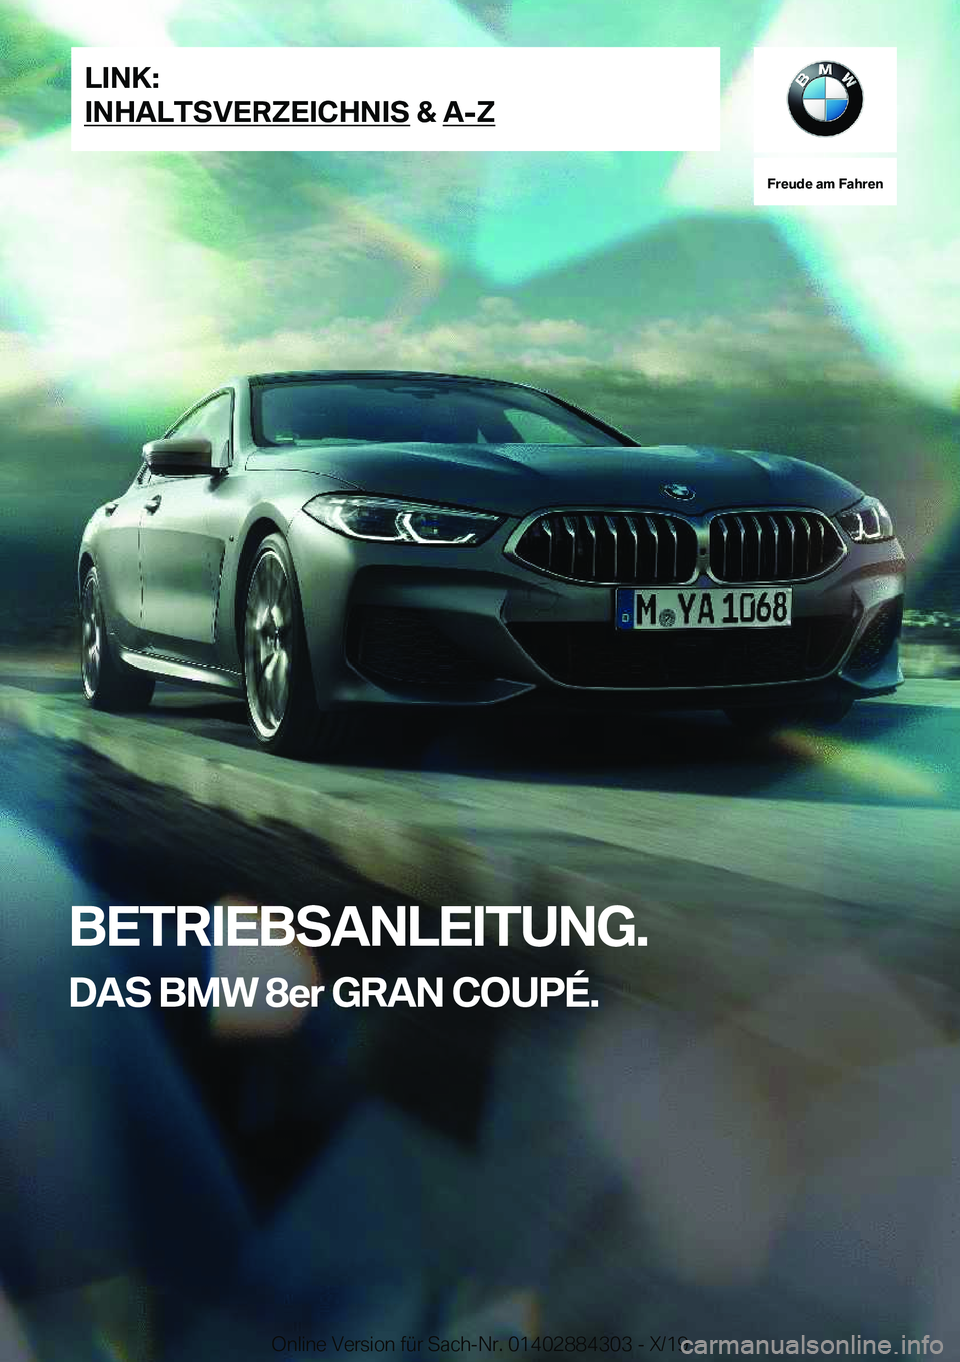 BMW 8 SERIES GRAN COUPE 2020  Betriebsanleitungen (in German) �F�r�e�u�d�e��a�m��F�a�h�r�e�n
�B�E�T�R�I�E�B�S�A�N�L�E�I�T�U�N�G�.�D�A�S��B�M�W��8�e�r��G�R�A�N��C�O�U�P�